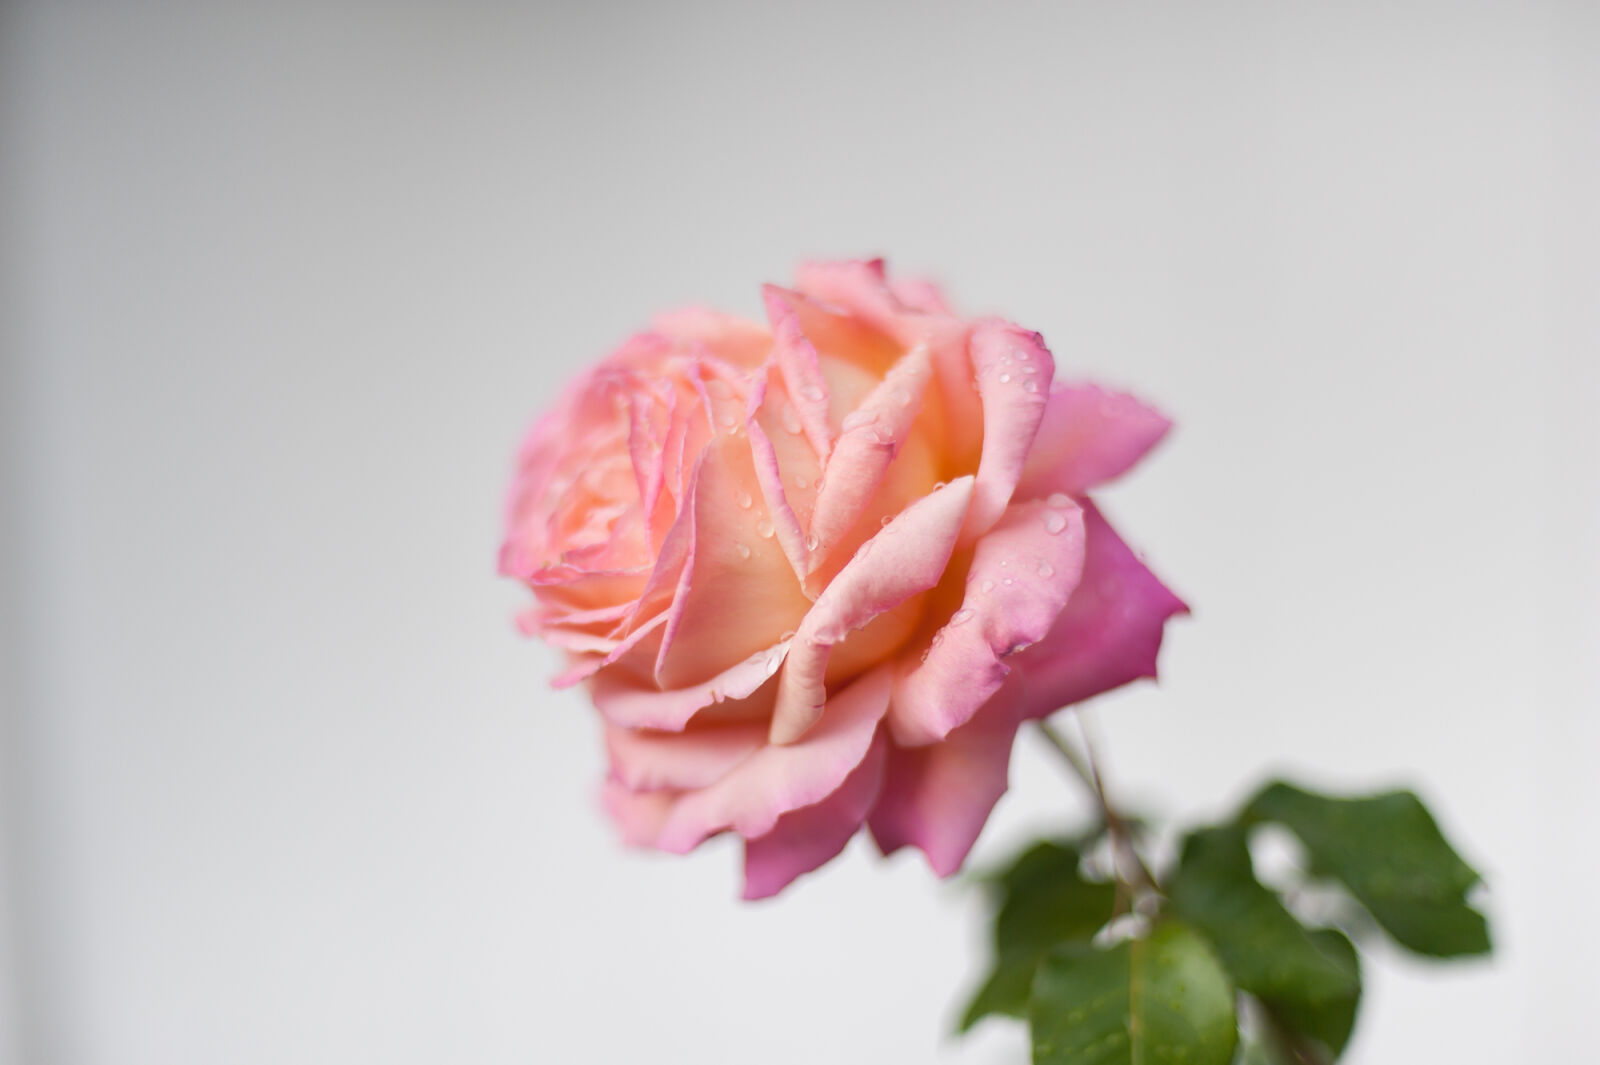 Nikon AF Nikkor 50mm F1.4D sample photo. Flower, nature, pink, rose photography